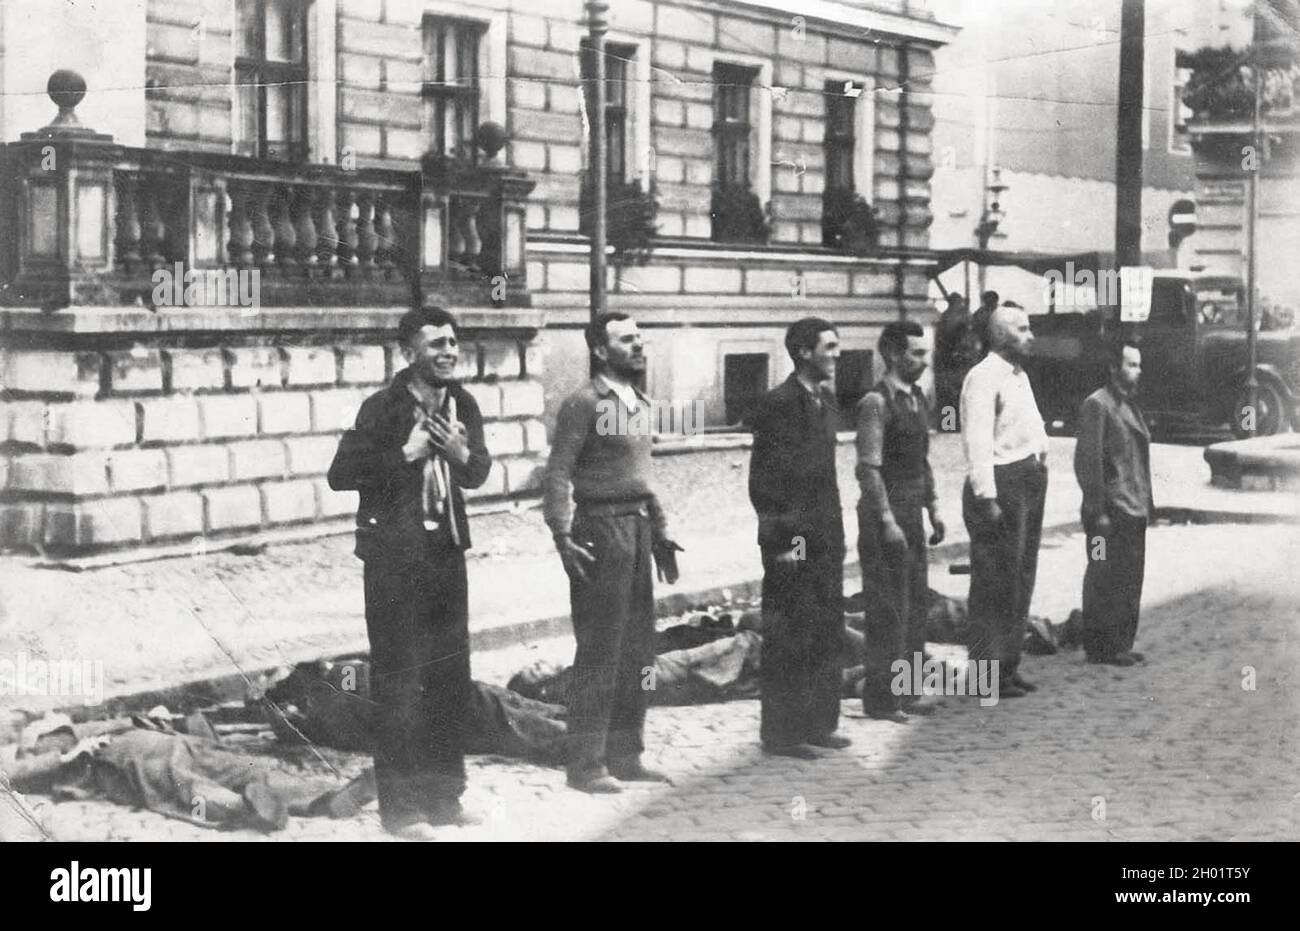 Des civils polonais sont exécutés pendant le dimanche sanglant à Bydgoszcz (Bromberg) , Pologne, 1939. Banque D'Images